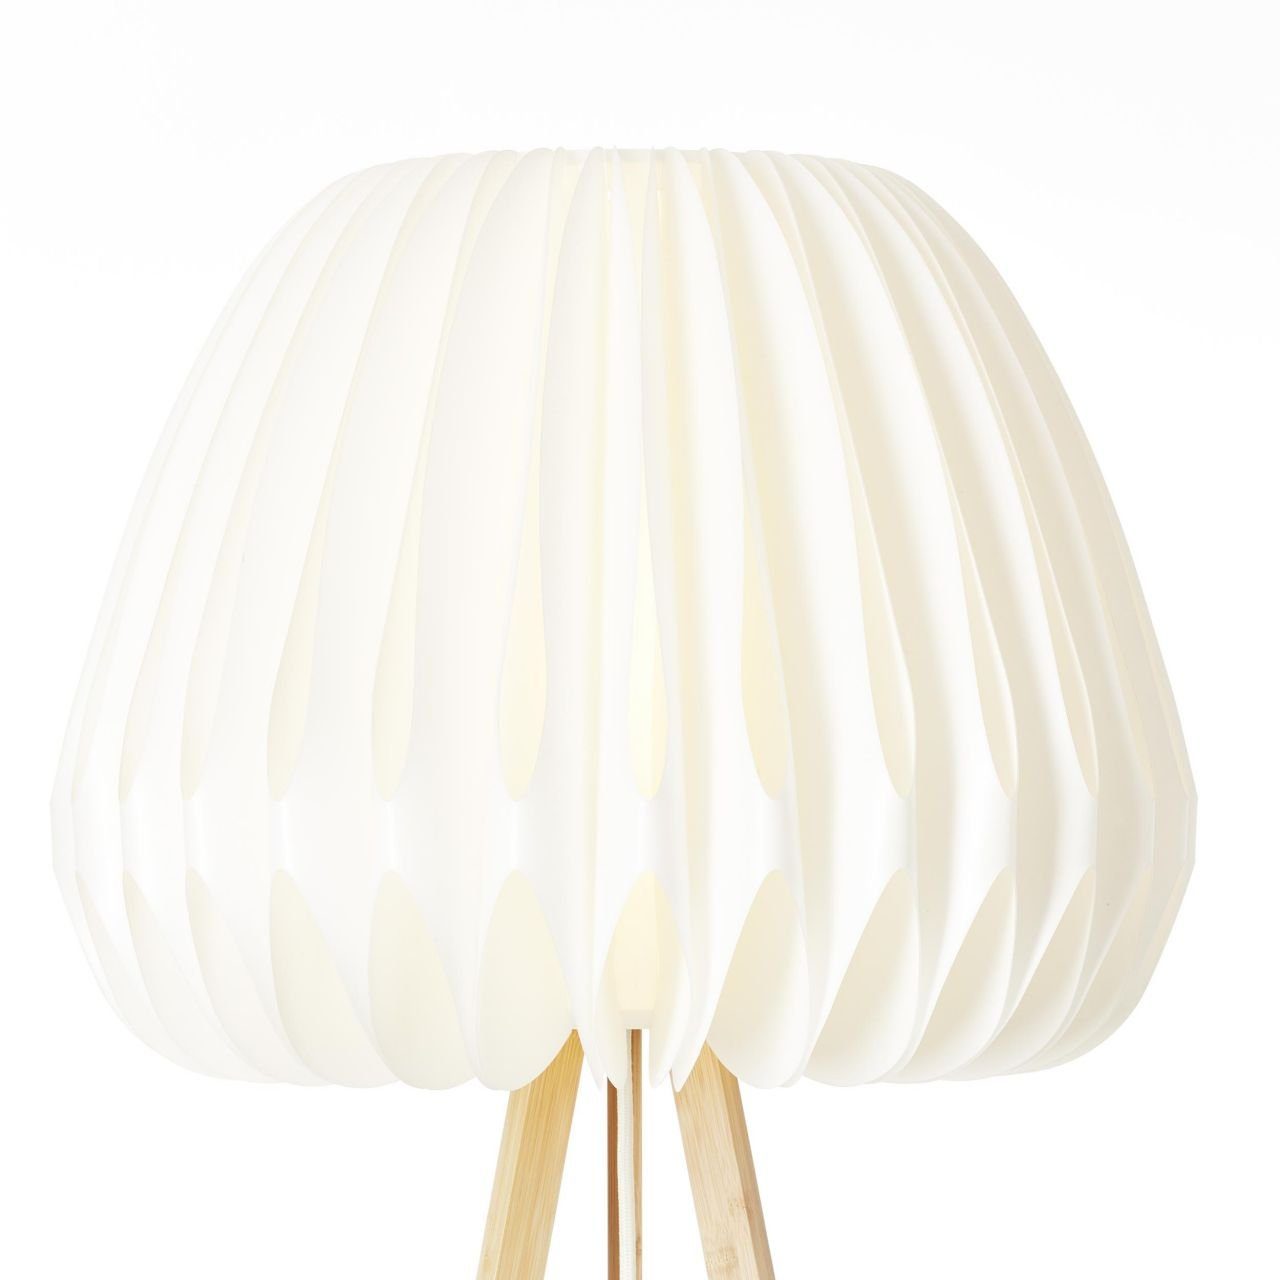 Bambus/Kunststoff Inna, dreibeinig Standleuchte, hell/weiß, Brilliant Lampe, Inna holz Stehlampe